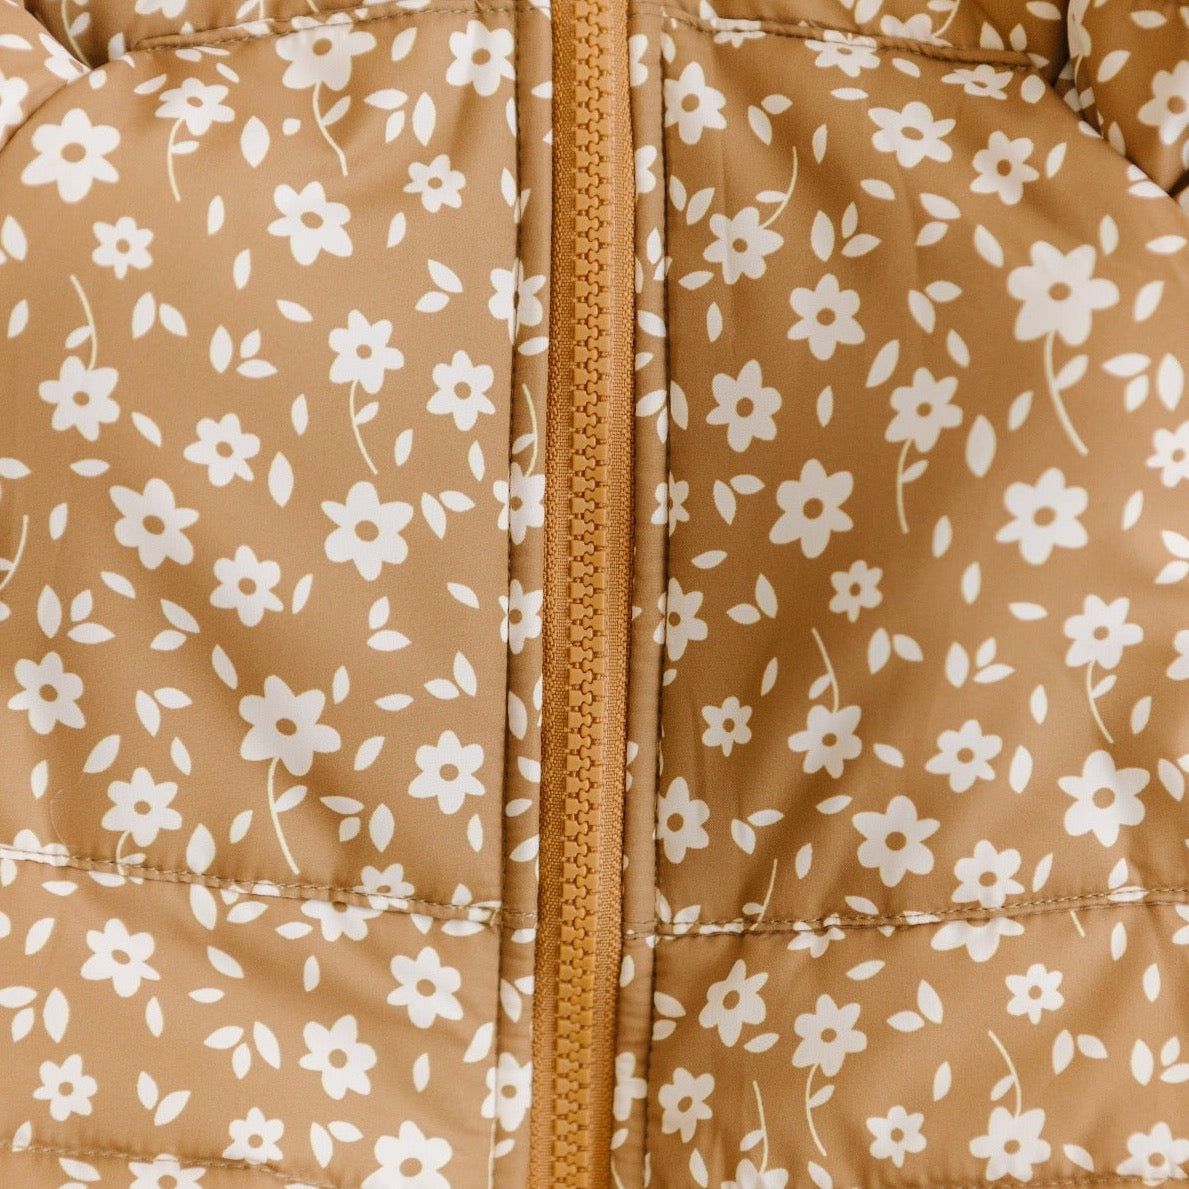 Brave Little Ones-Camel Floral Puffer Jacket